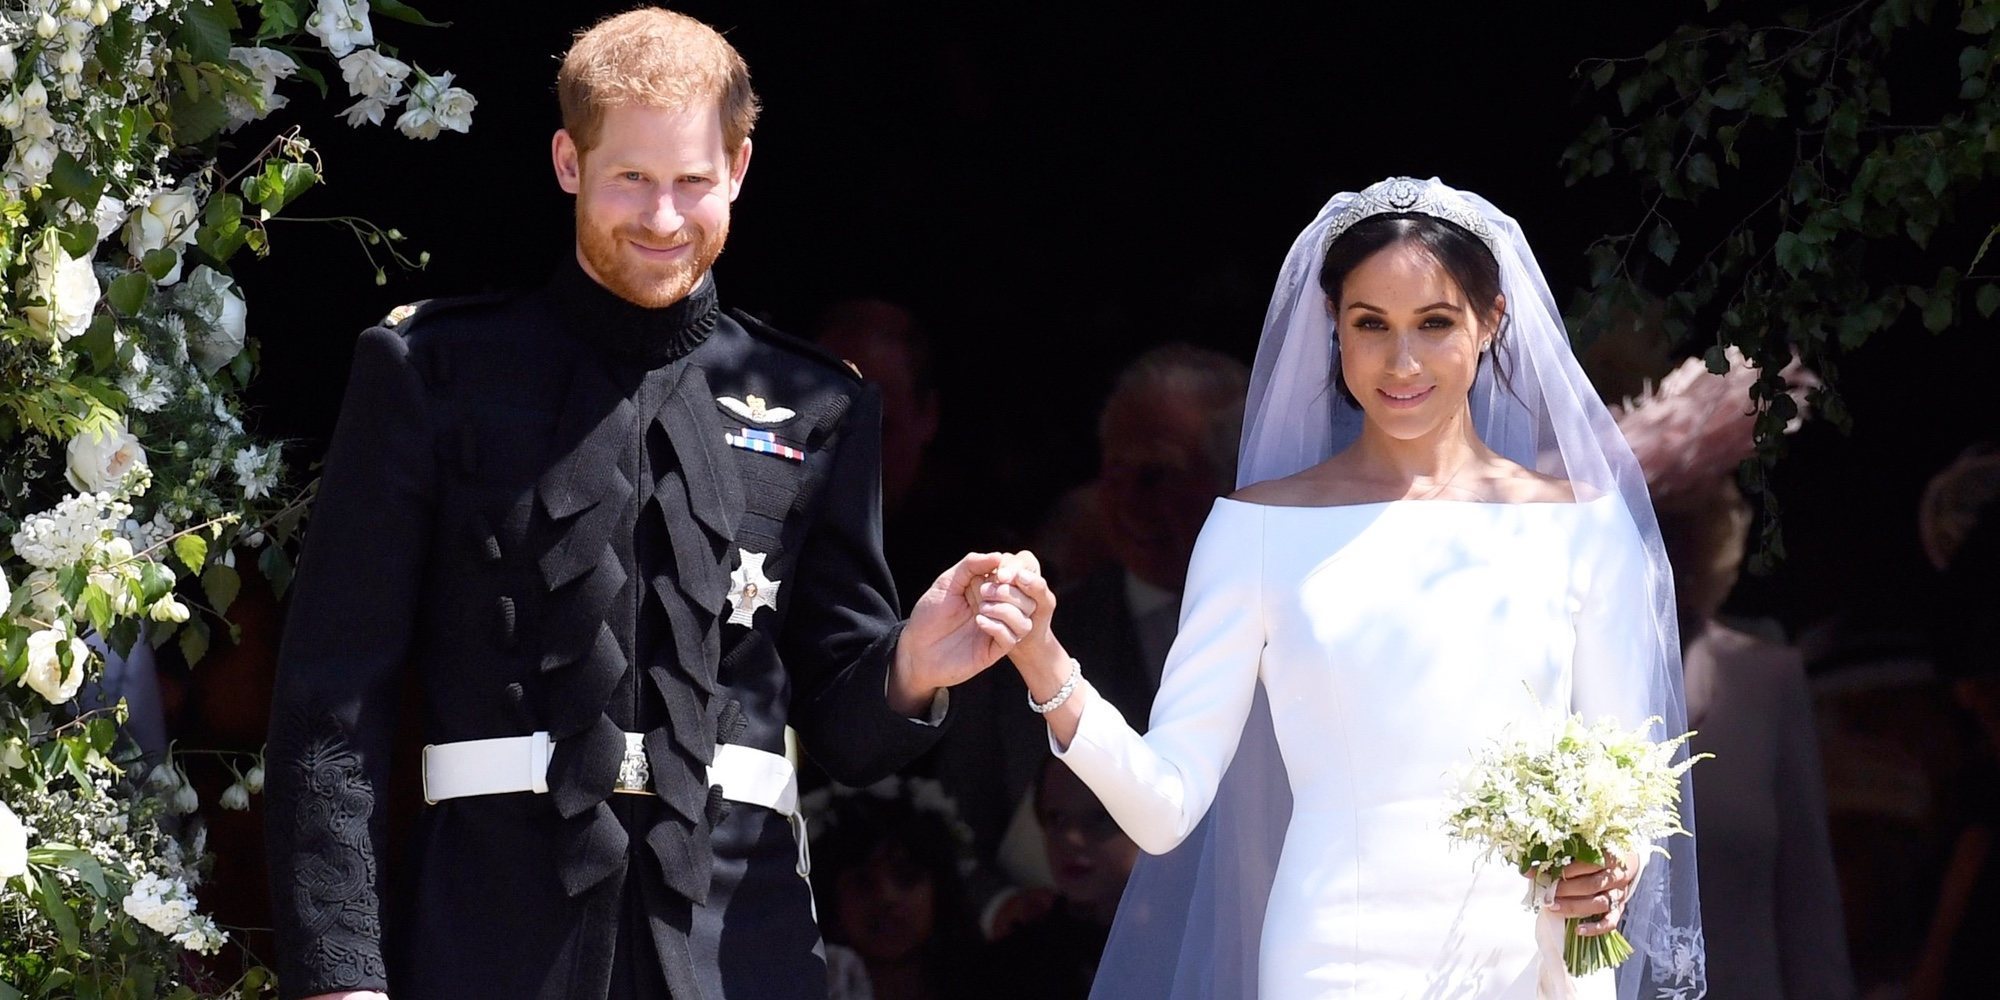 La boda del Príncipe Harry y Meghan Markle: risas, gospel, dos vestidos, un sermón curioso y mucho amor